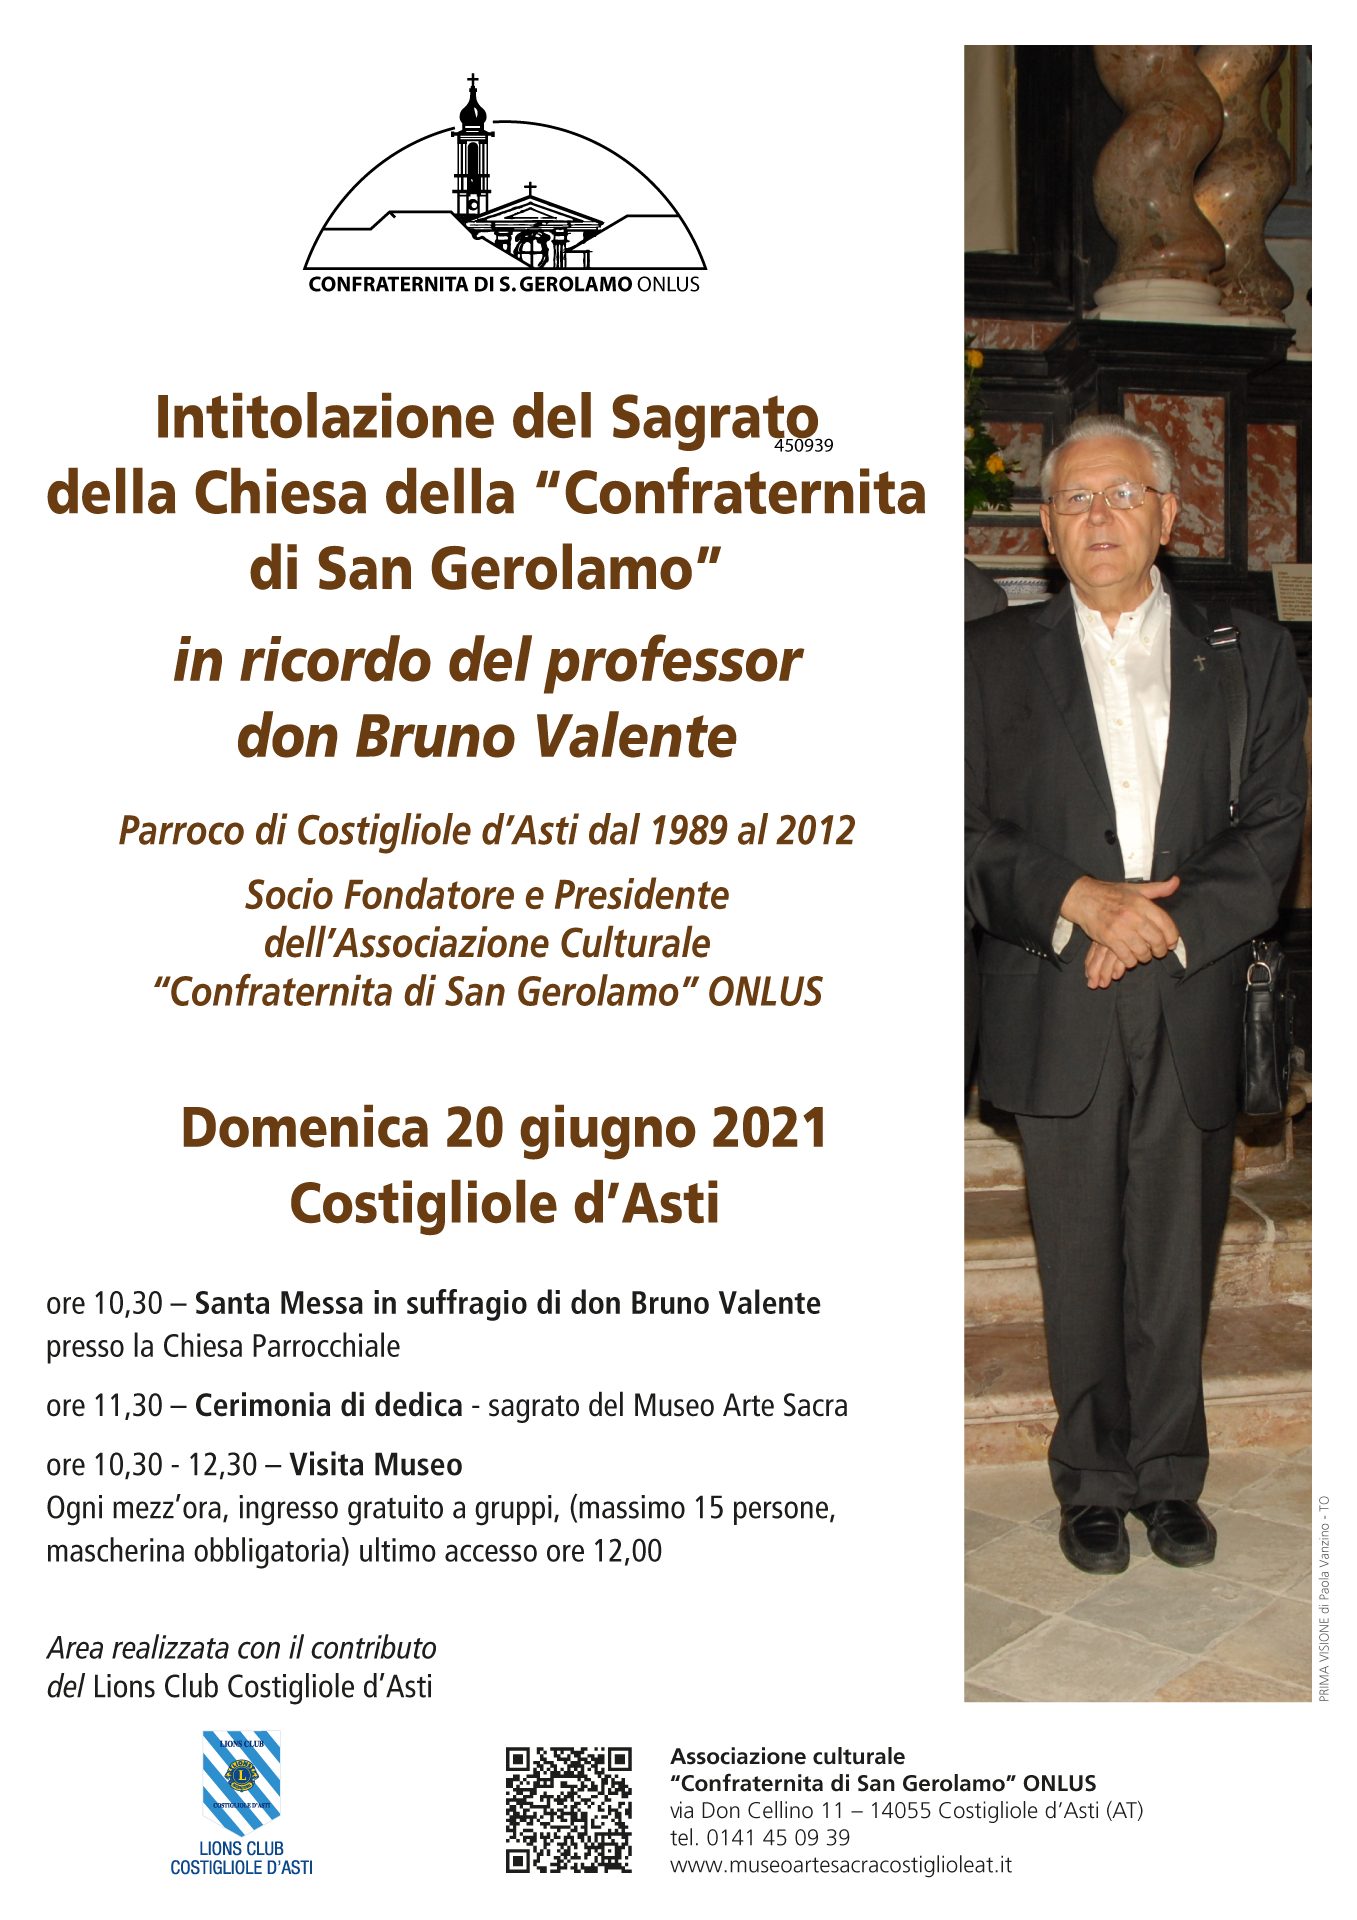 Intitolazione del Sagrato della Chiesa della “Confraternita di San Gerolamo” in ricordo del professor don Bruno Valente